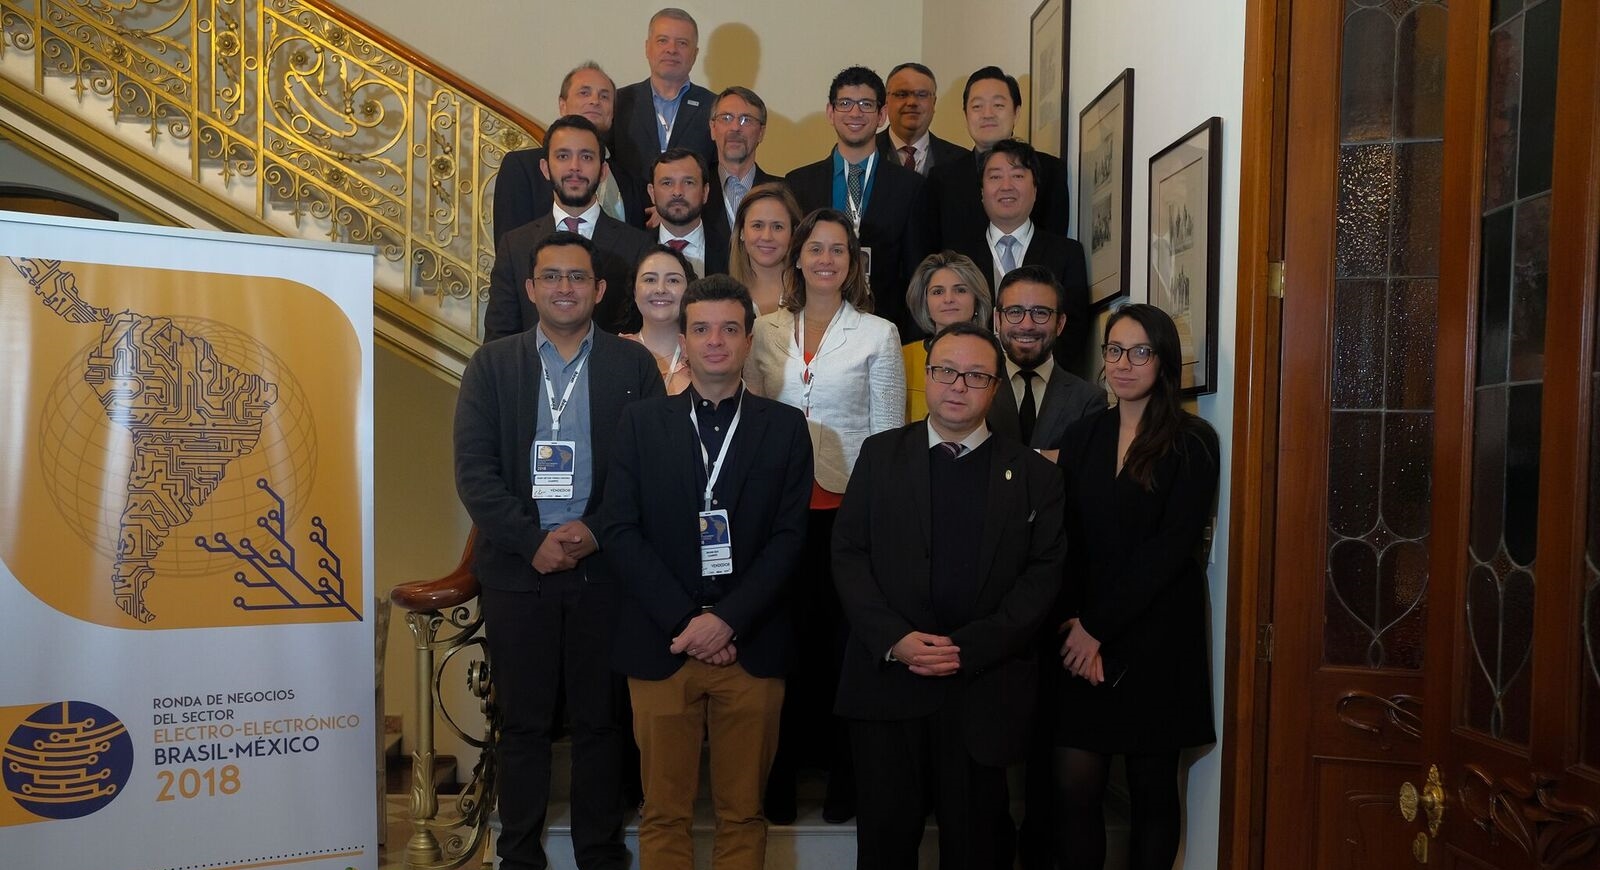 Missões à Colômbia, Peru e México geram negócios para o setor elétrico e eletrônico